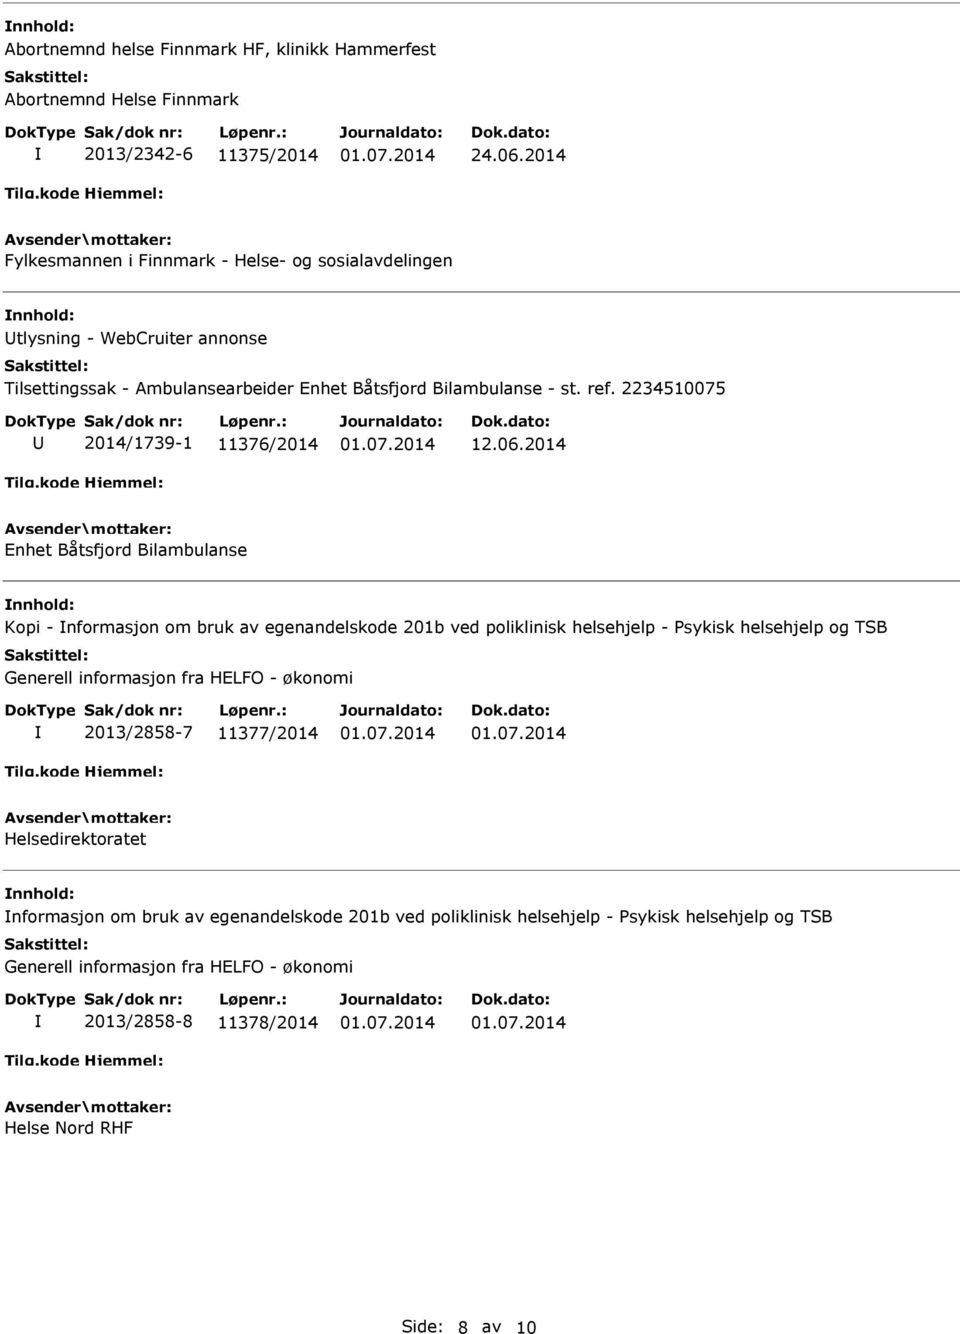 2014 Enhet Båtsfjord Bilambulanse Kopi - nformasjon om bruk av egenandelskode 201b ved poliklinisk helsehjelp - Psykisk helsehjelp og TSB Generell informasjon fra HELFO -